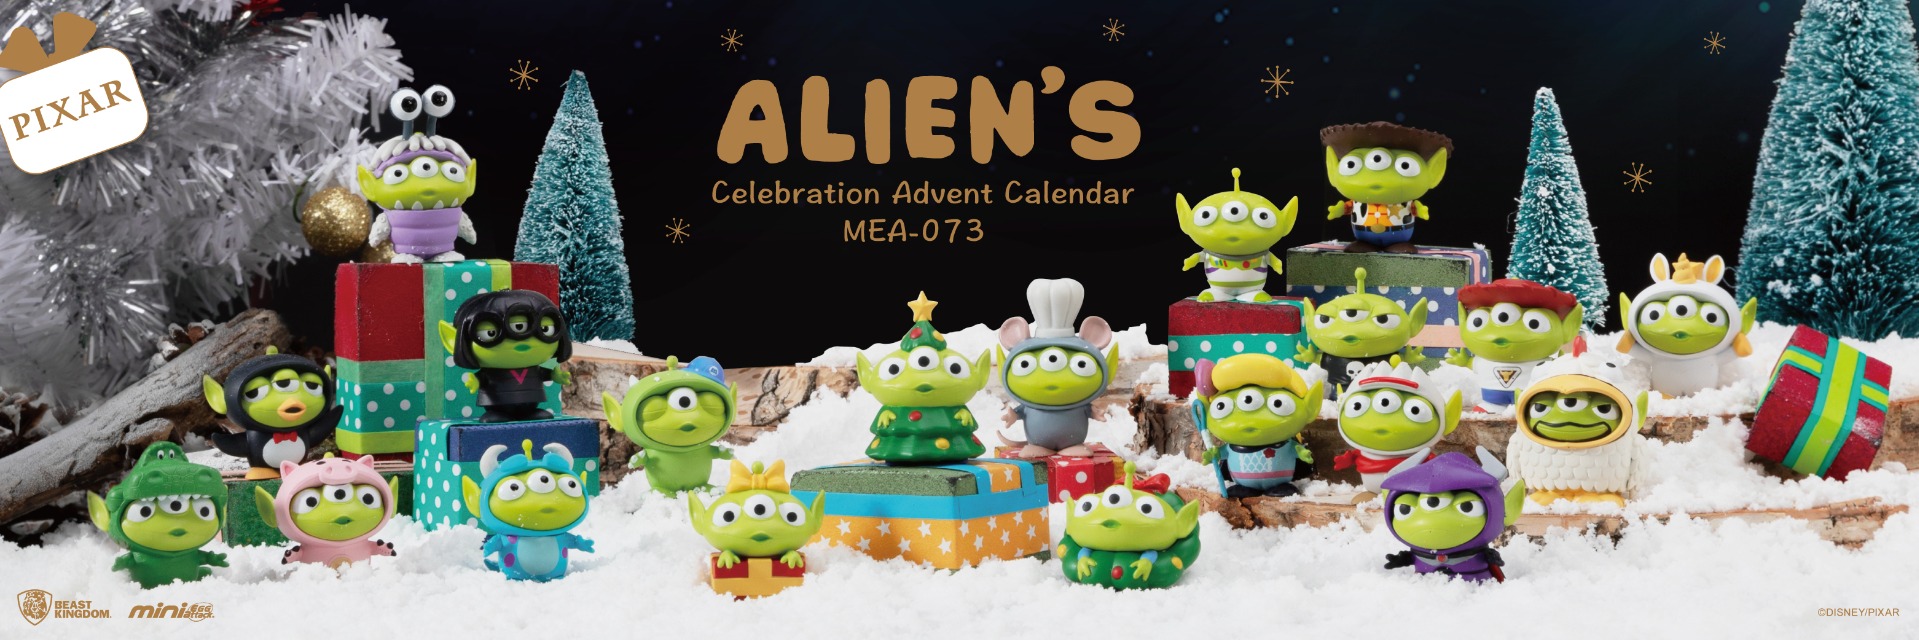 MEA-073 Alien's Celebration Advent Calendar